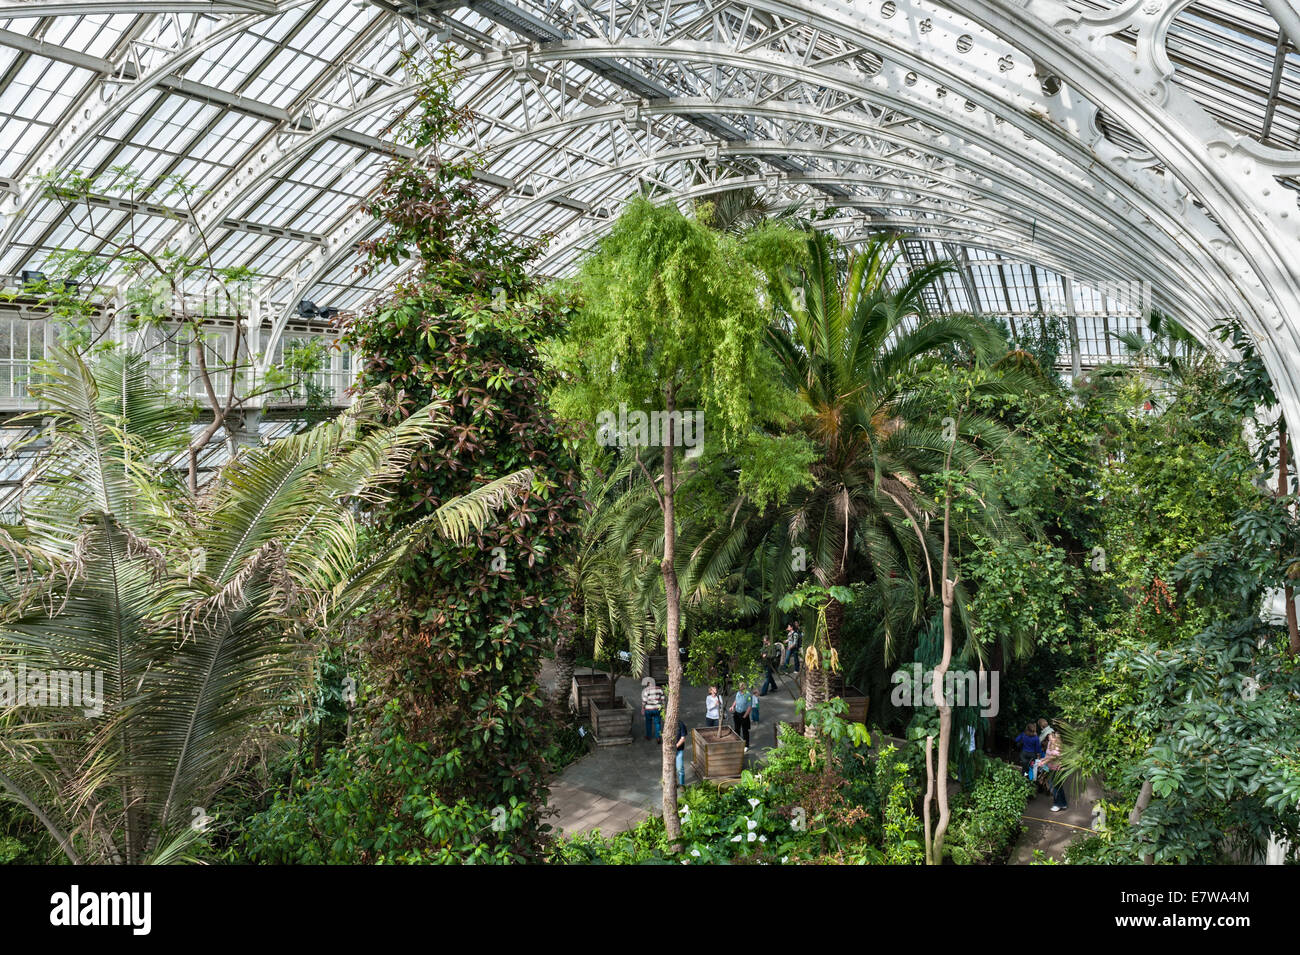 The Royal Botanic Gardens, Kew, Londres, Royaume-Uni. A l'intérieur de la maison Temperate en fer forgé et verre, construite par Decimus Burton, qui a ouvert ses portes en 1863 Banque D'Images